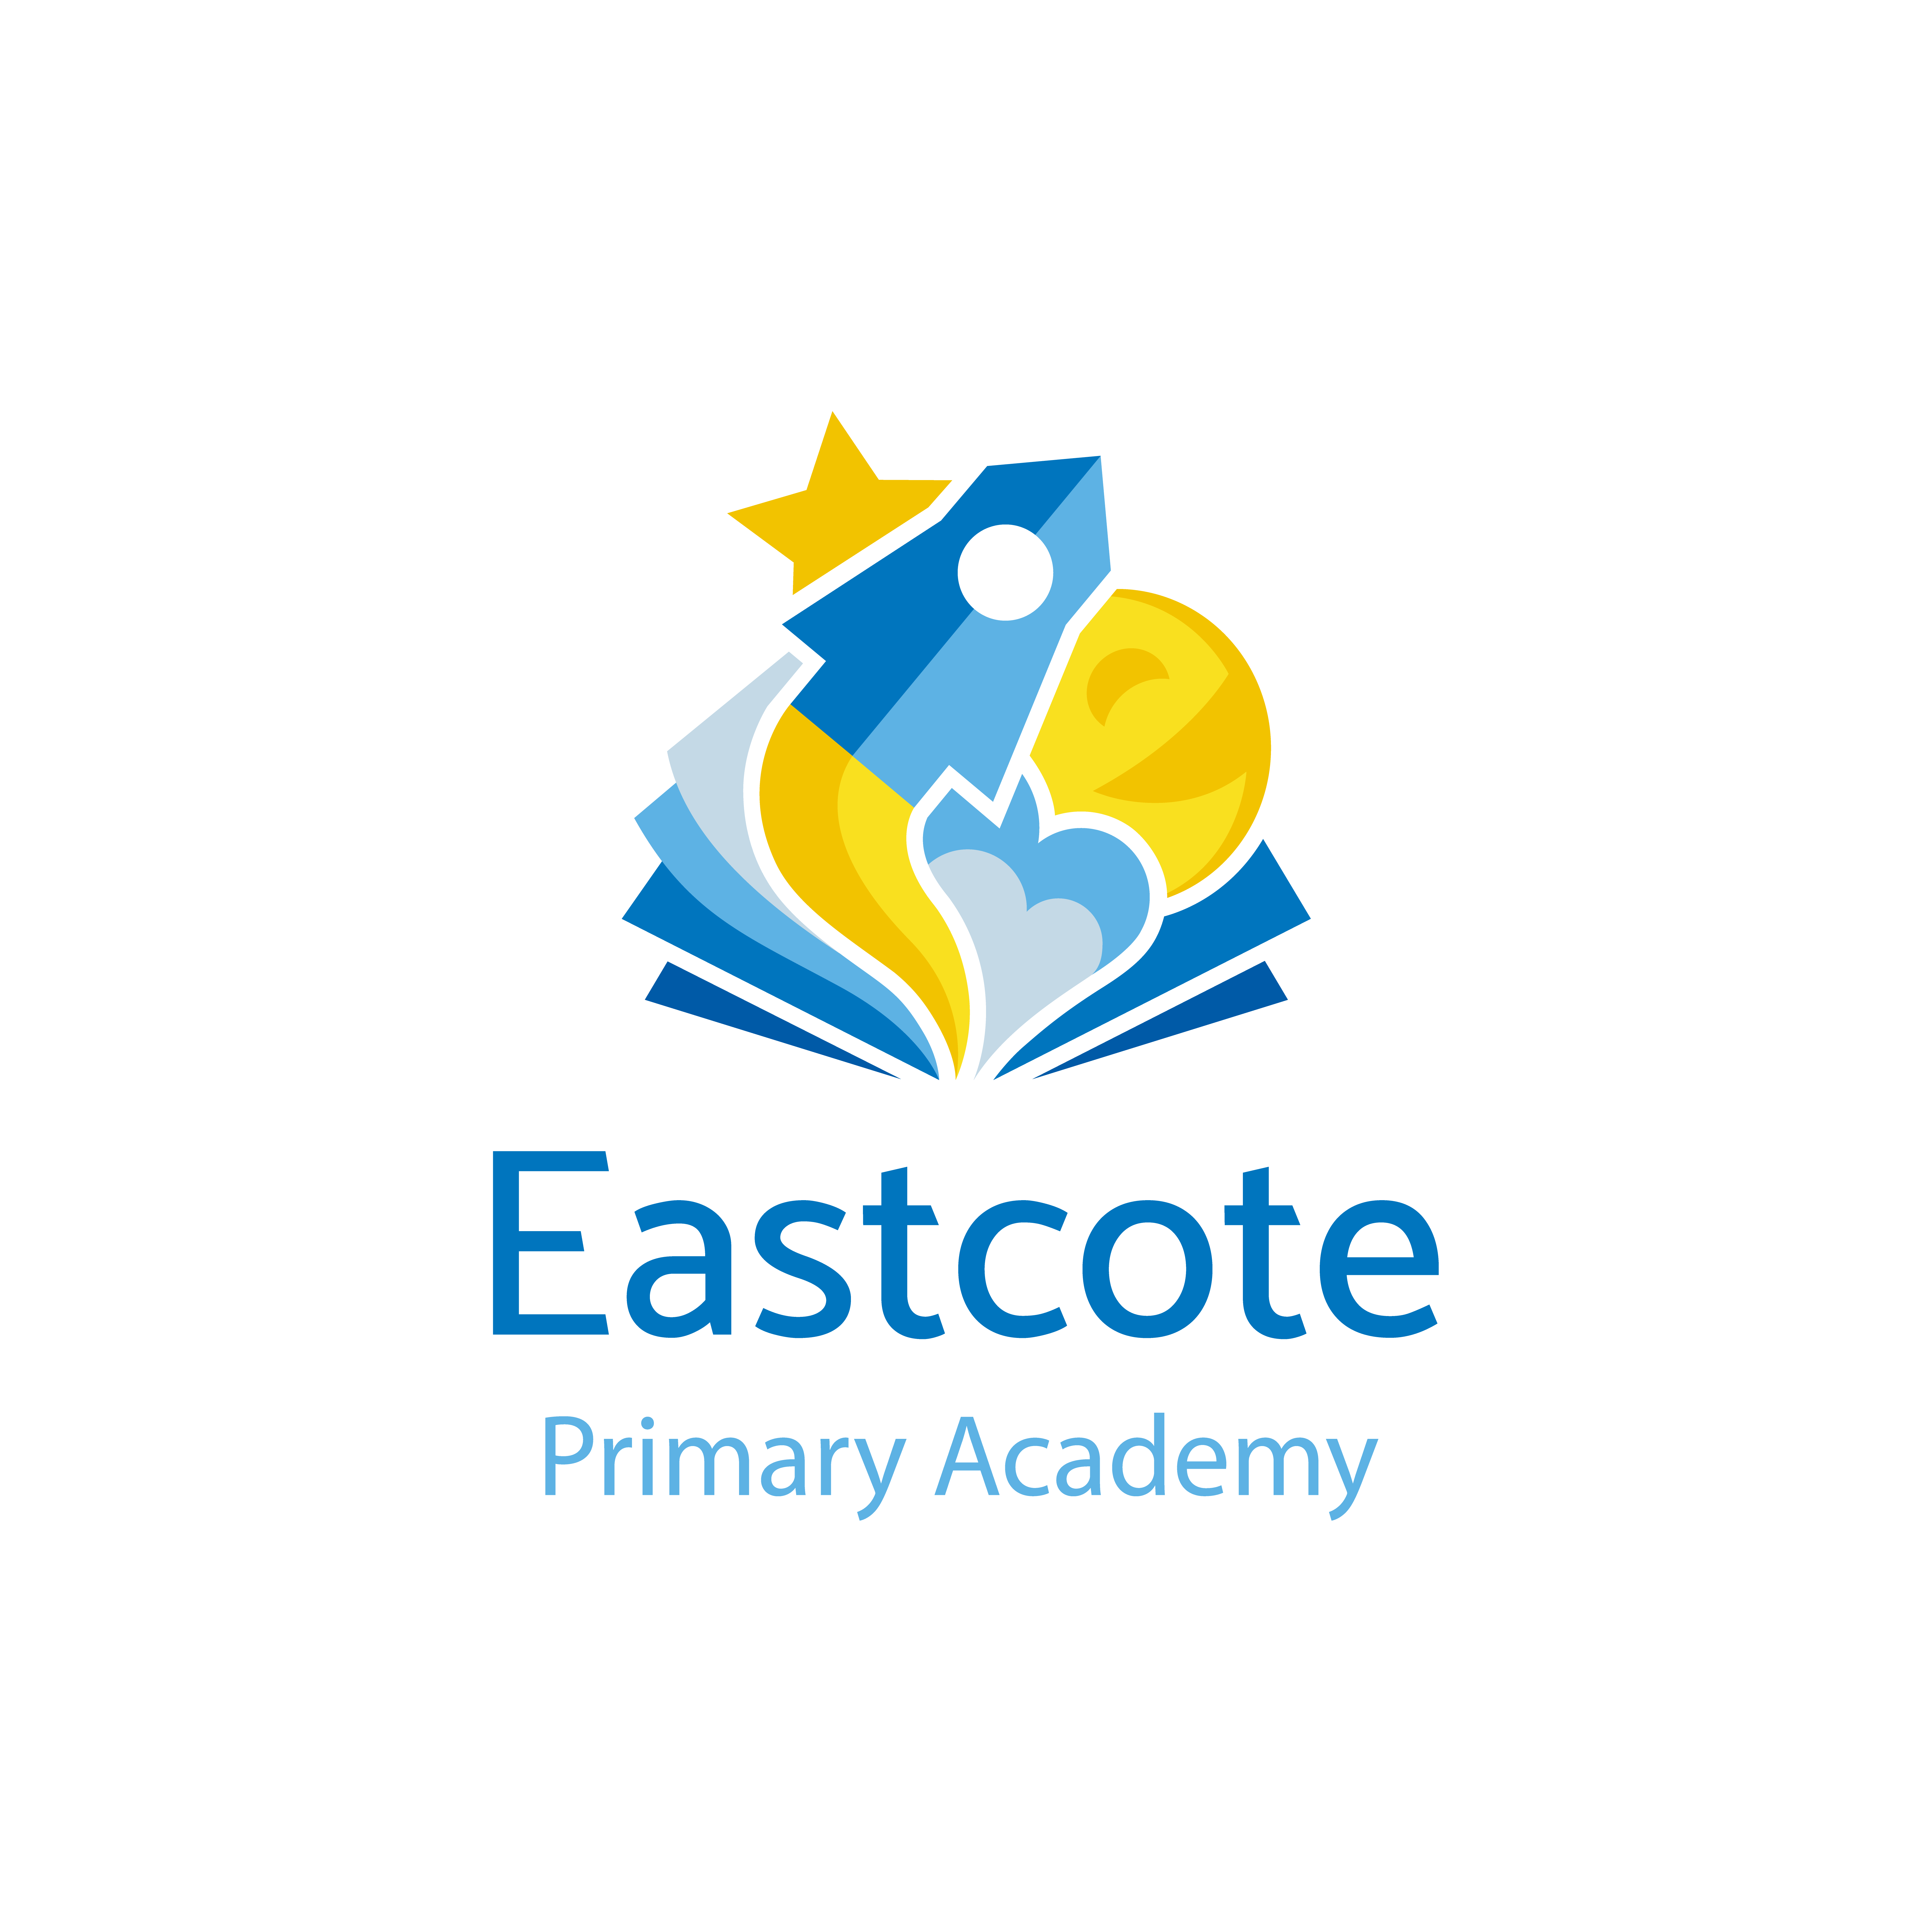 Eastcote primary academy logo